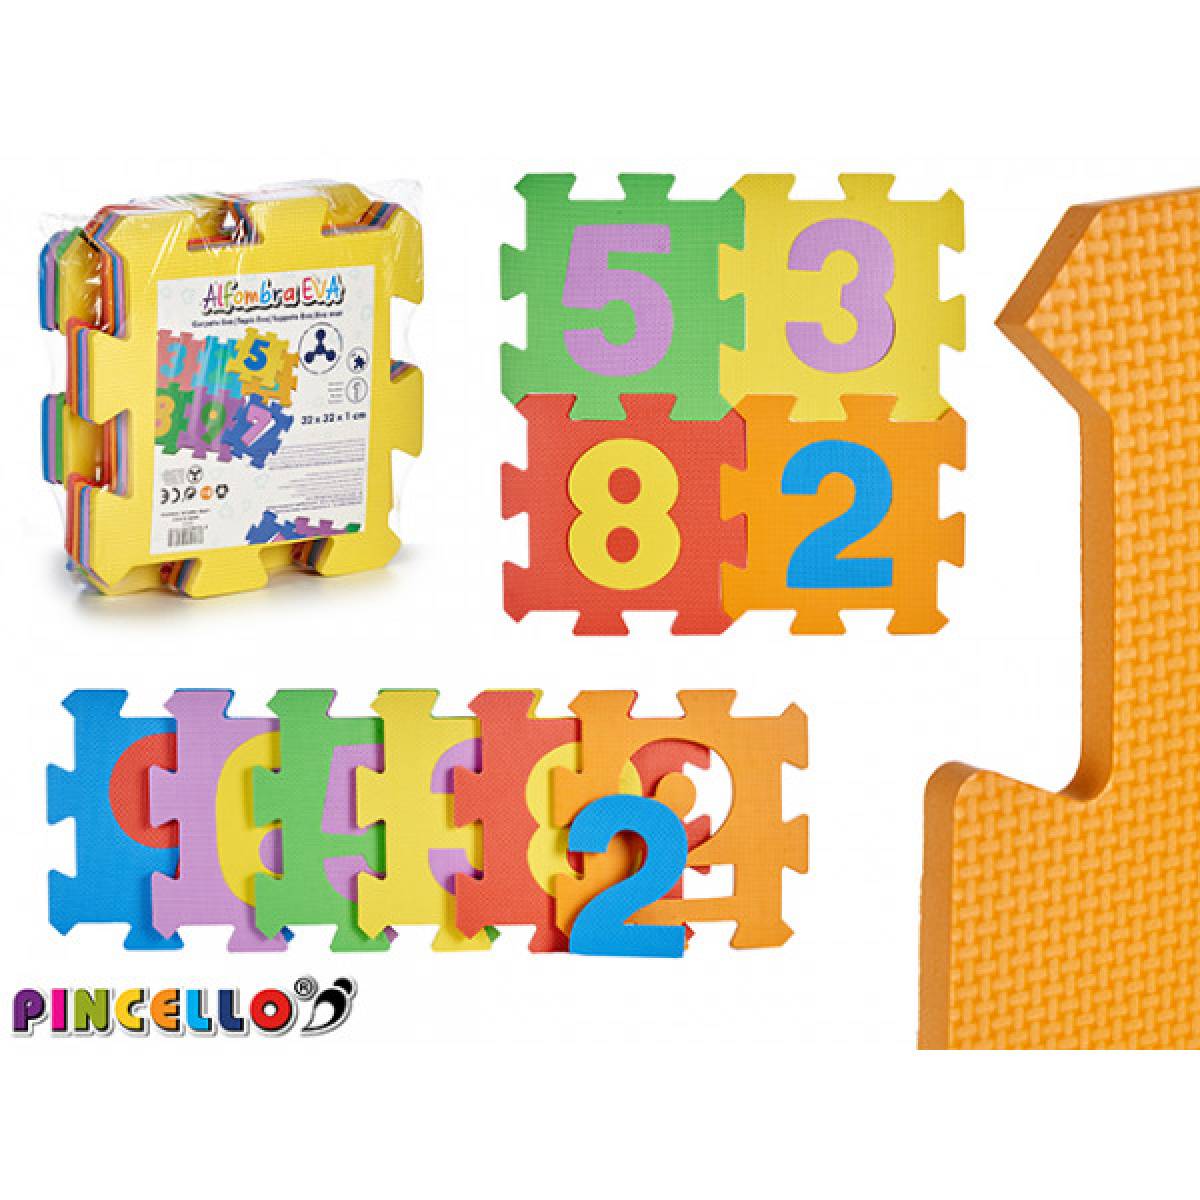 Puzzle PINCELLO 9 bucati model numere